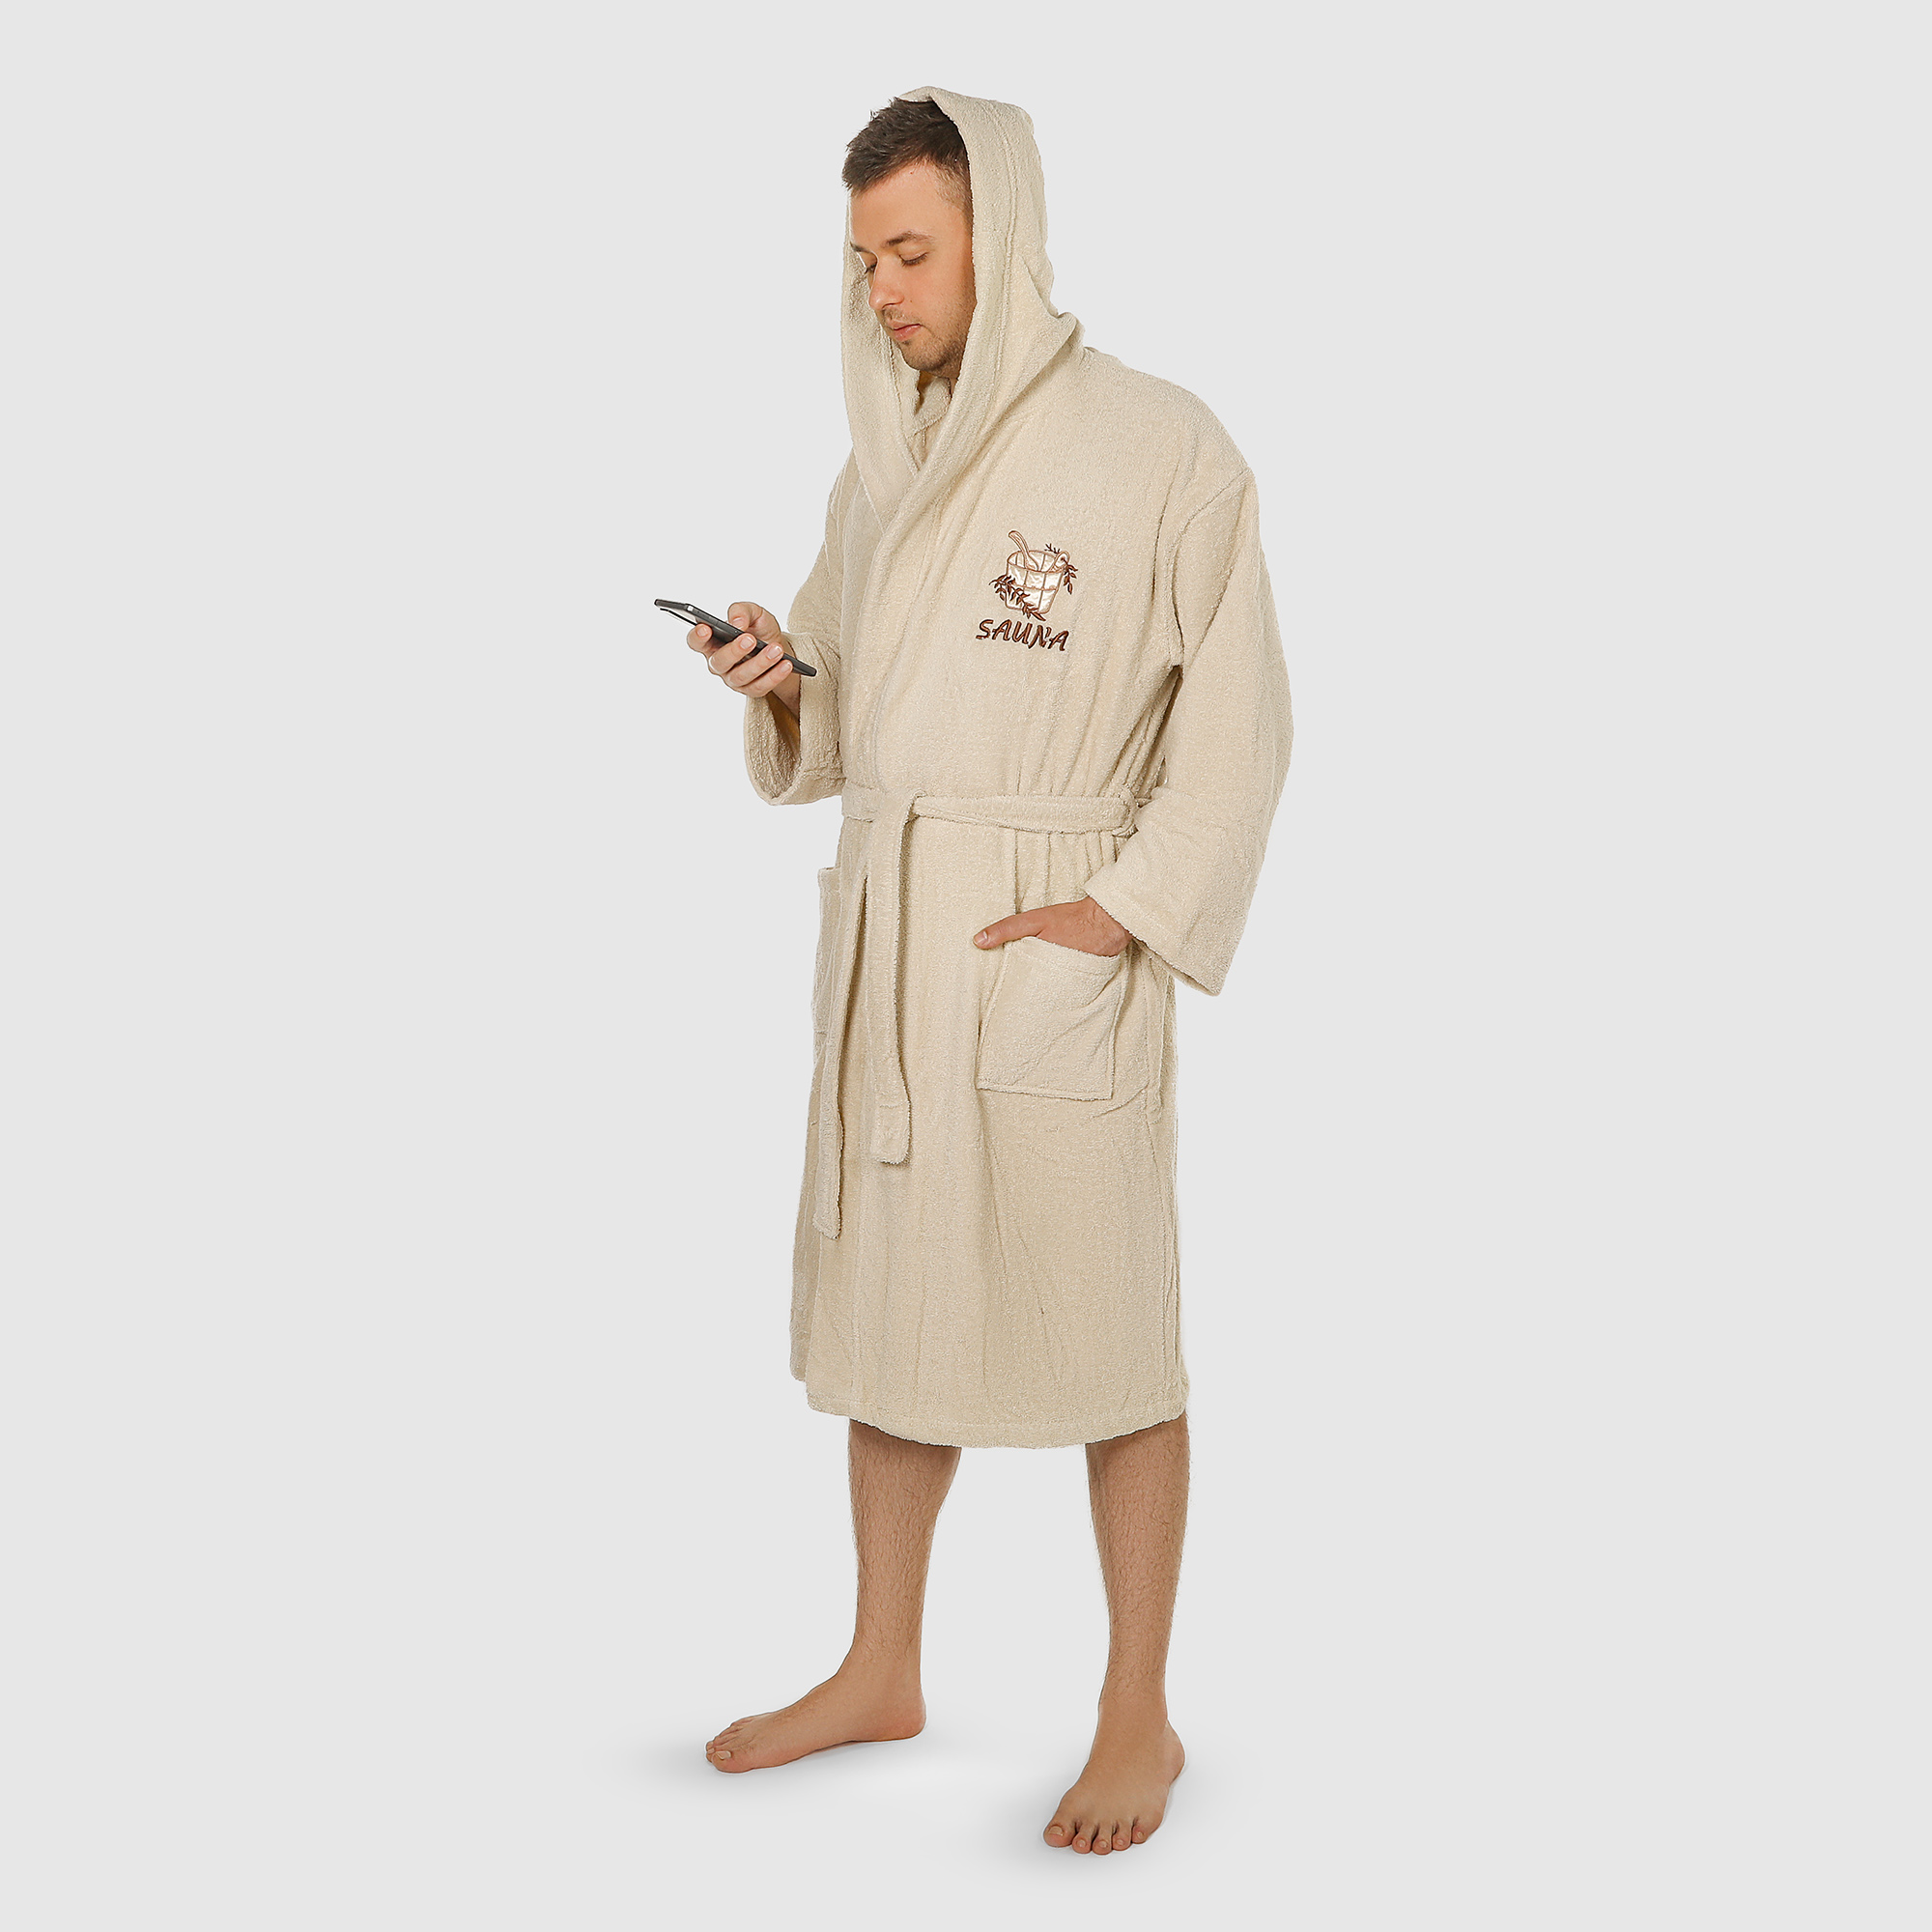 Халат мужской Asil Sauna brown XL махровый с капюшоном халат мужской asil sauna brown m махровый с капюшоном